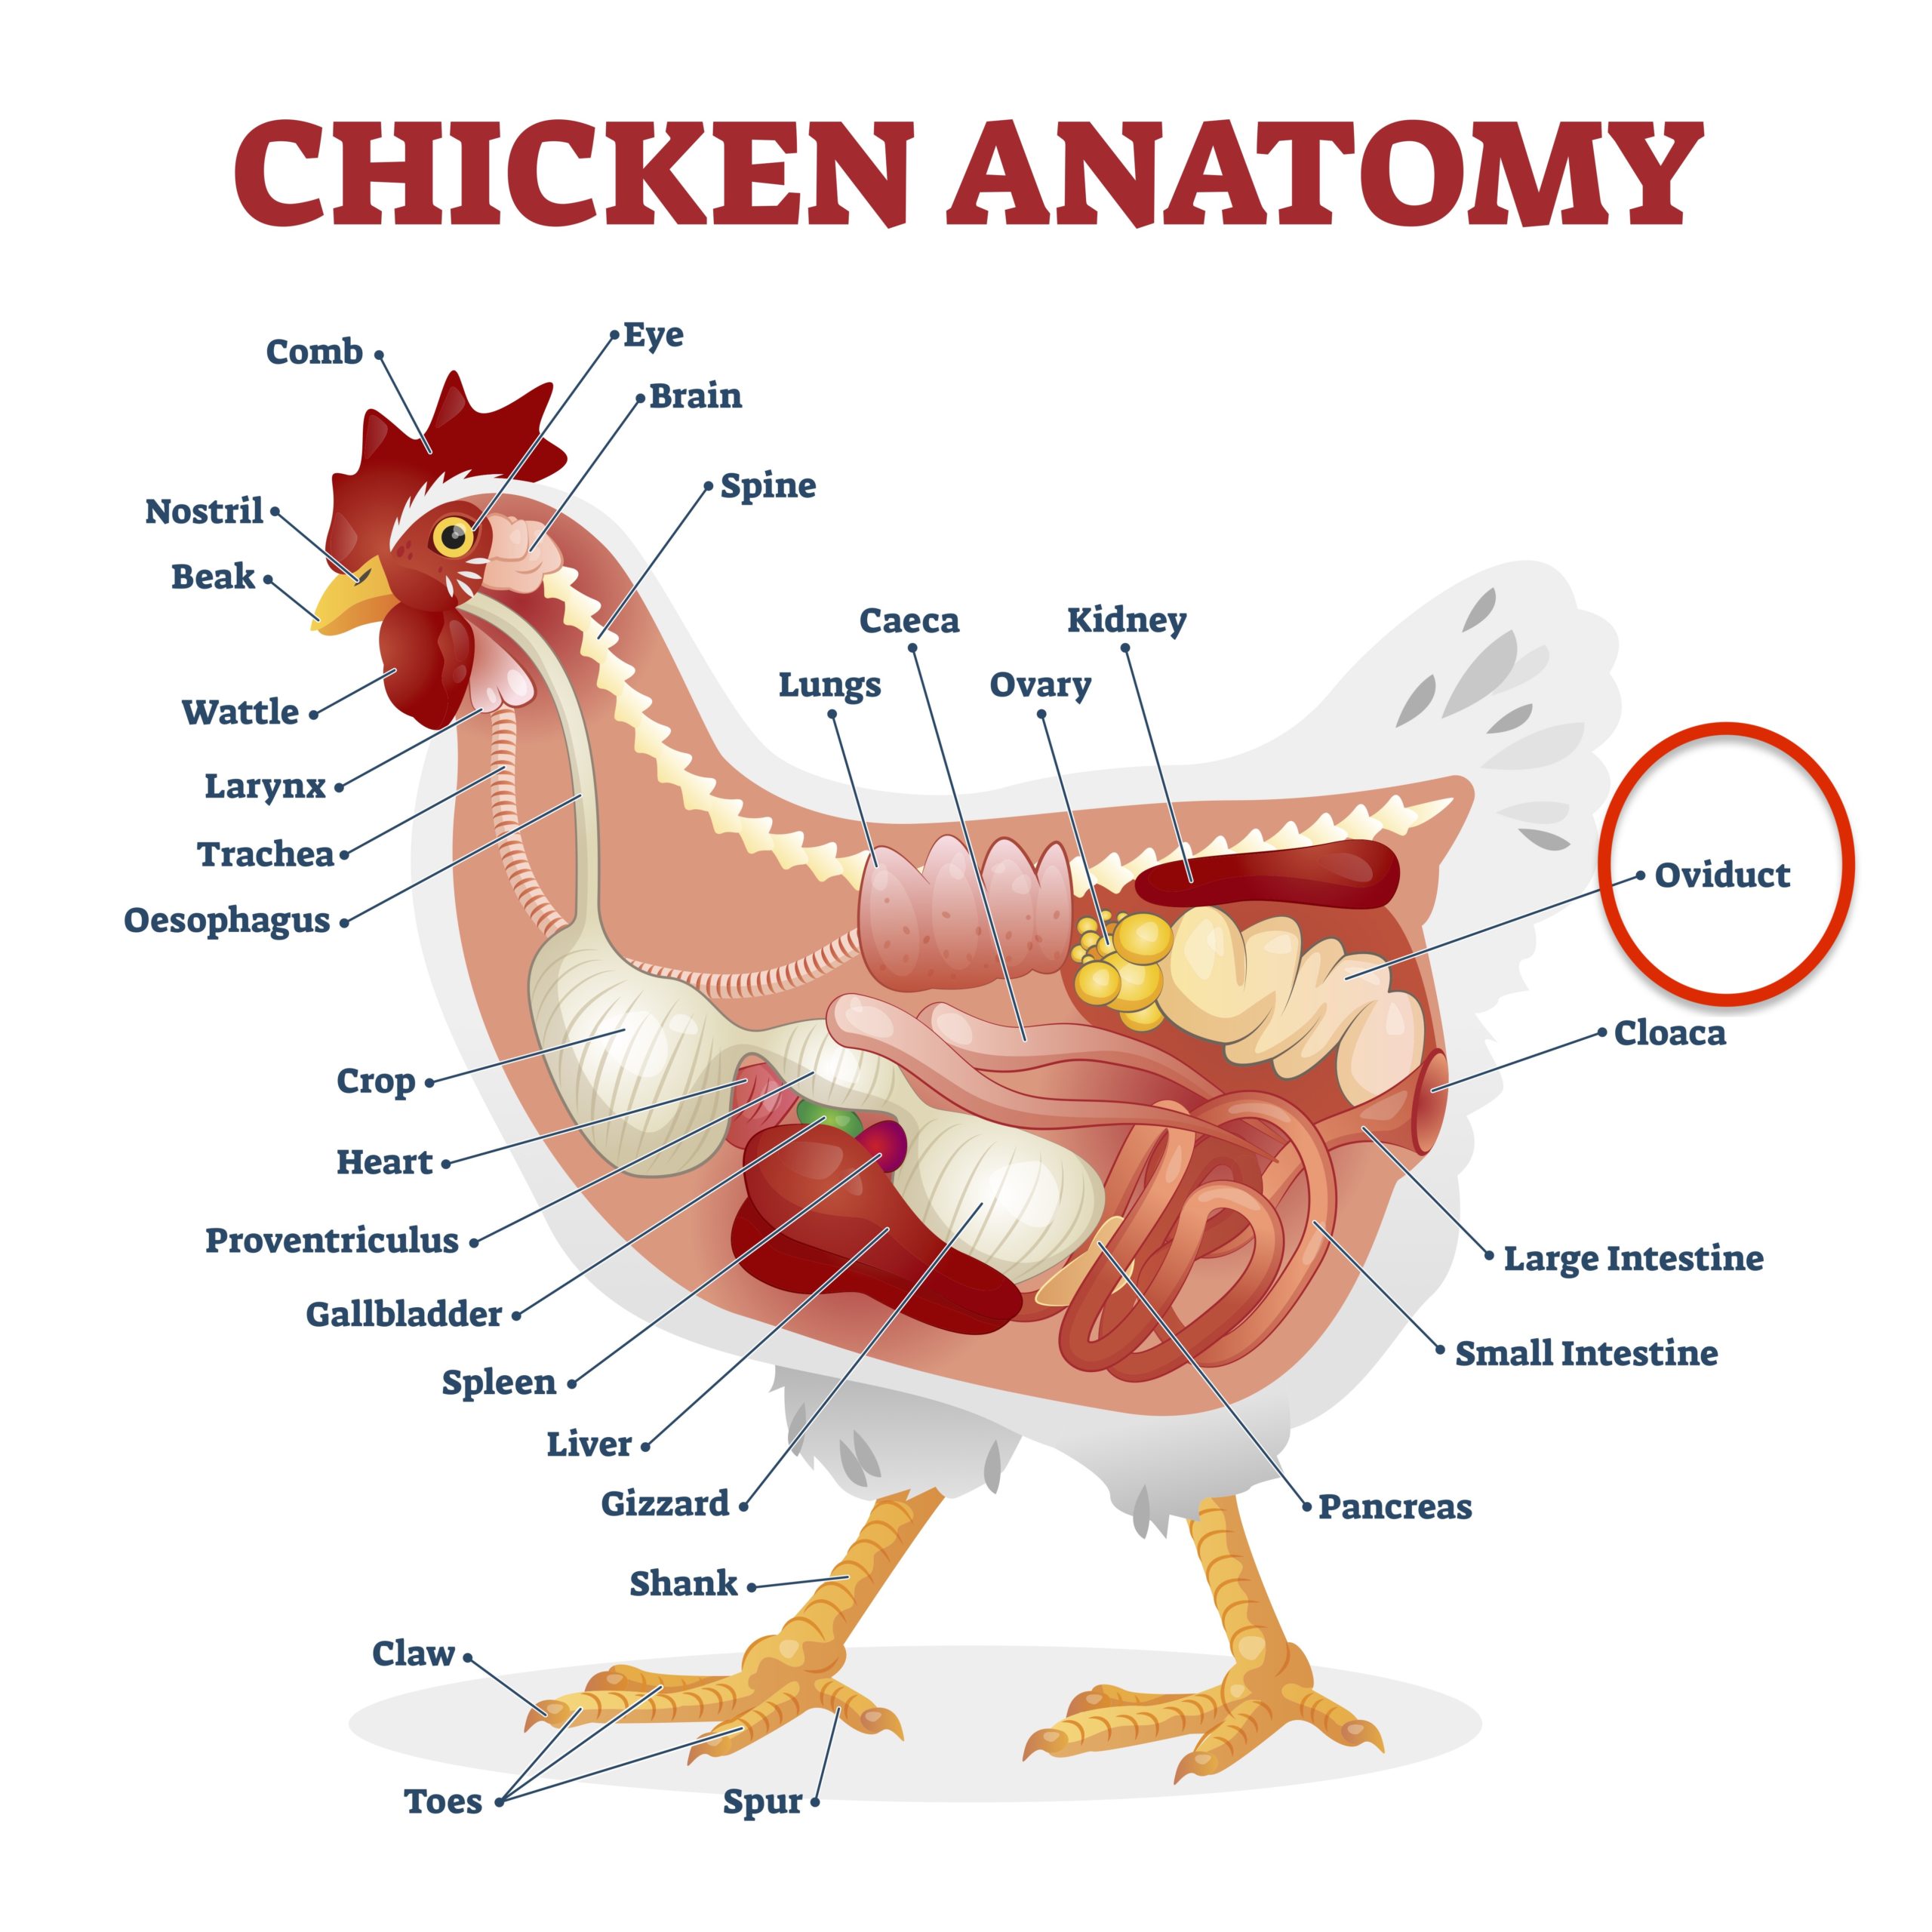 Chicken anatomy poster